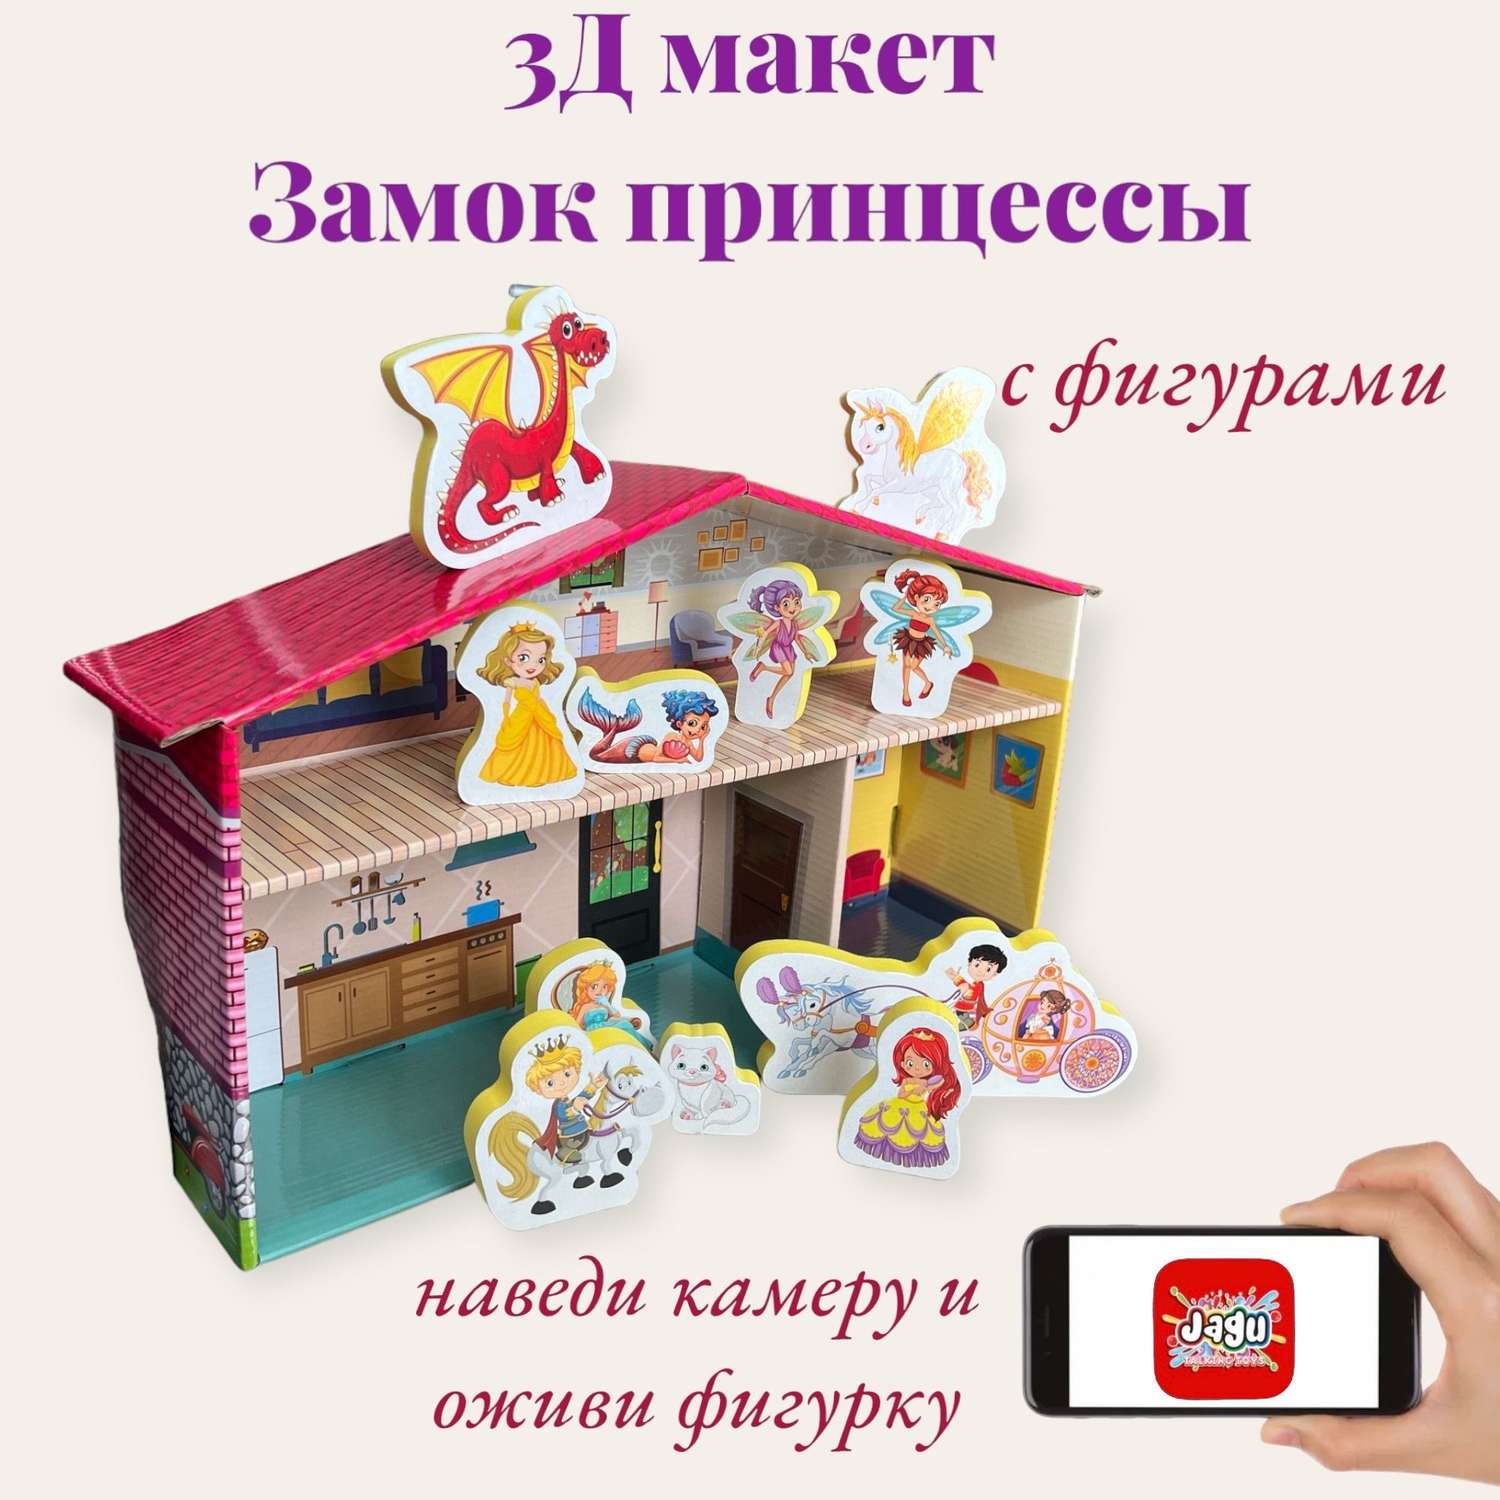 Игровой набор JAGU 3Д макет Дом принцессы с дополненной реальностью 11 фигурок МТ91-488 - фото 1